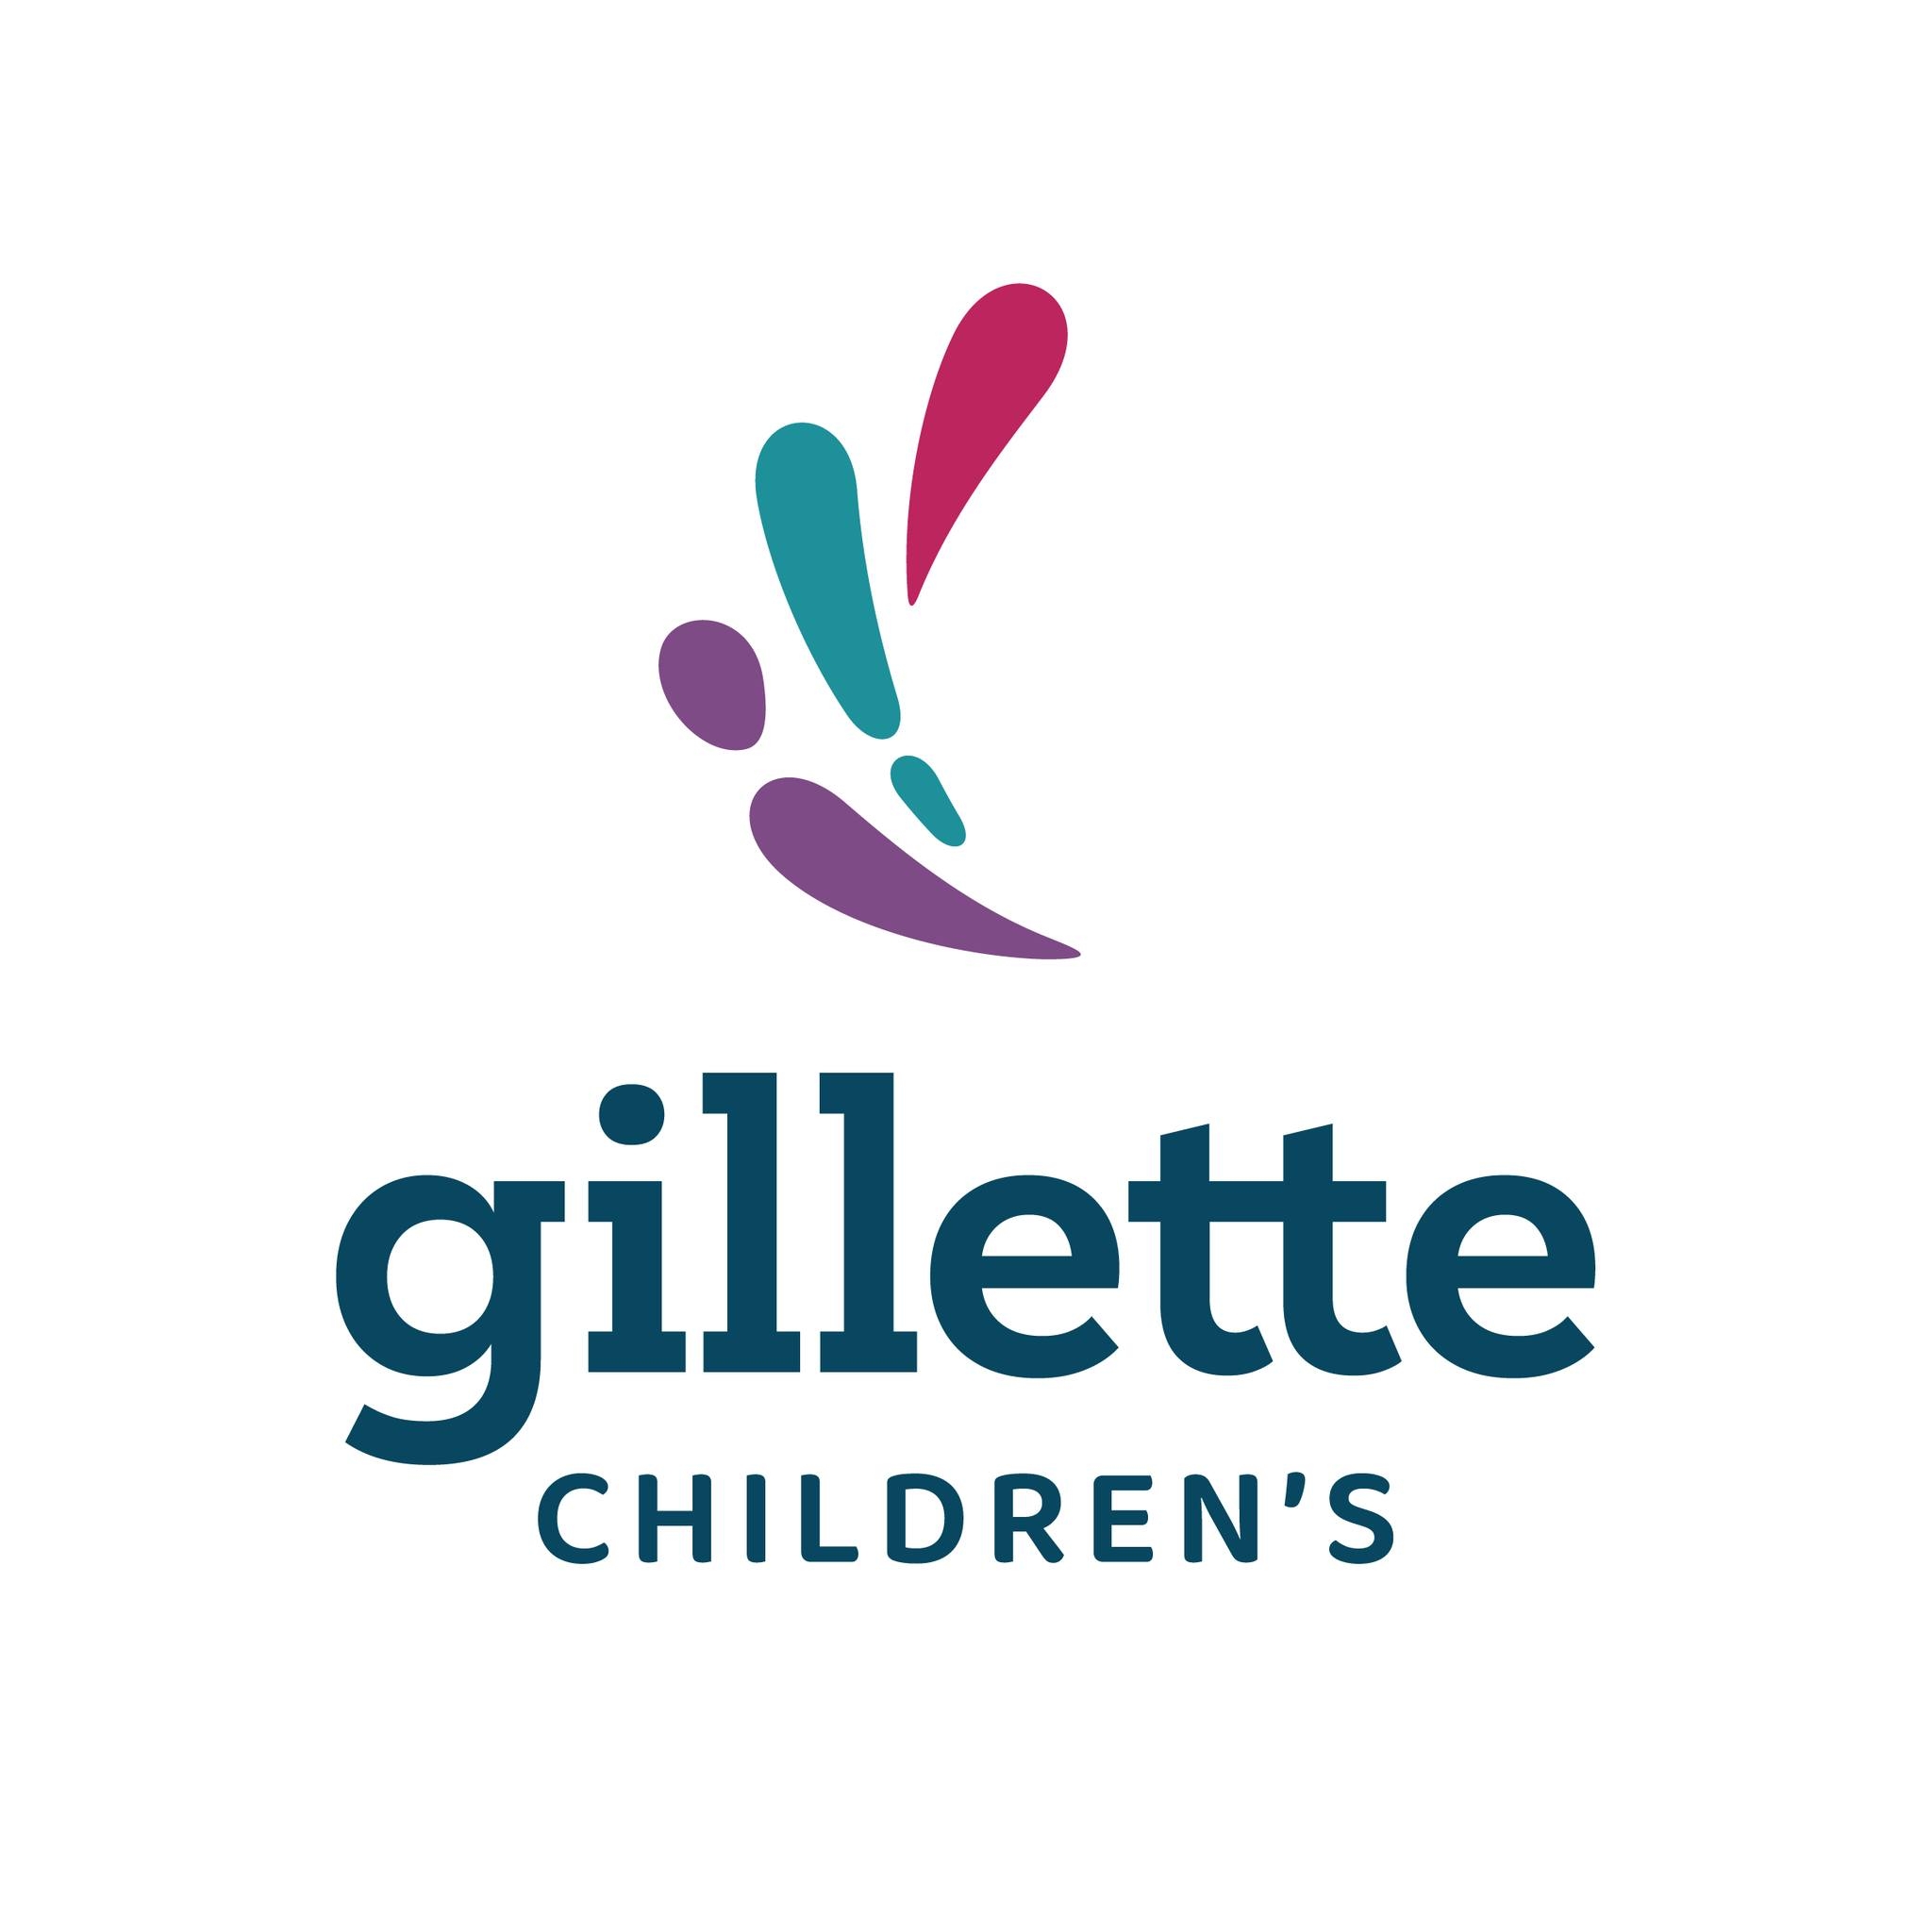 Gillette's Children